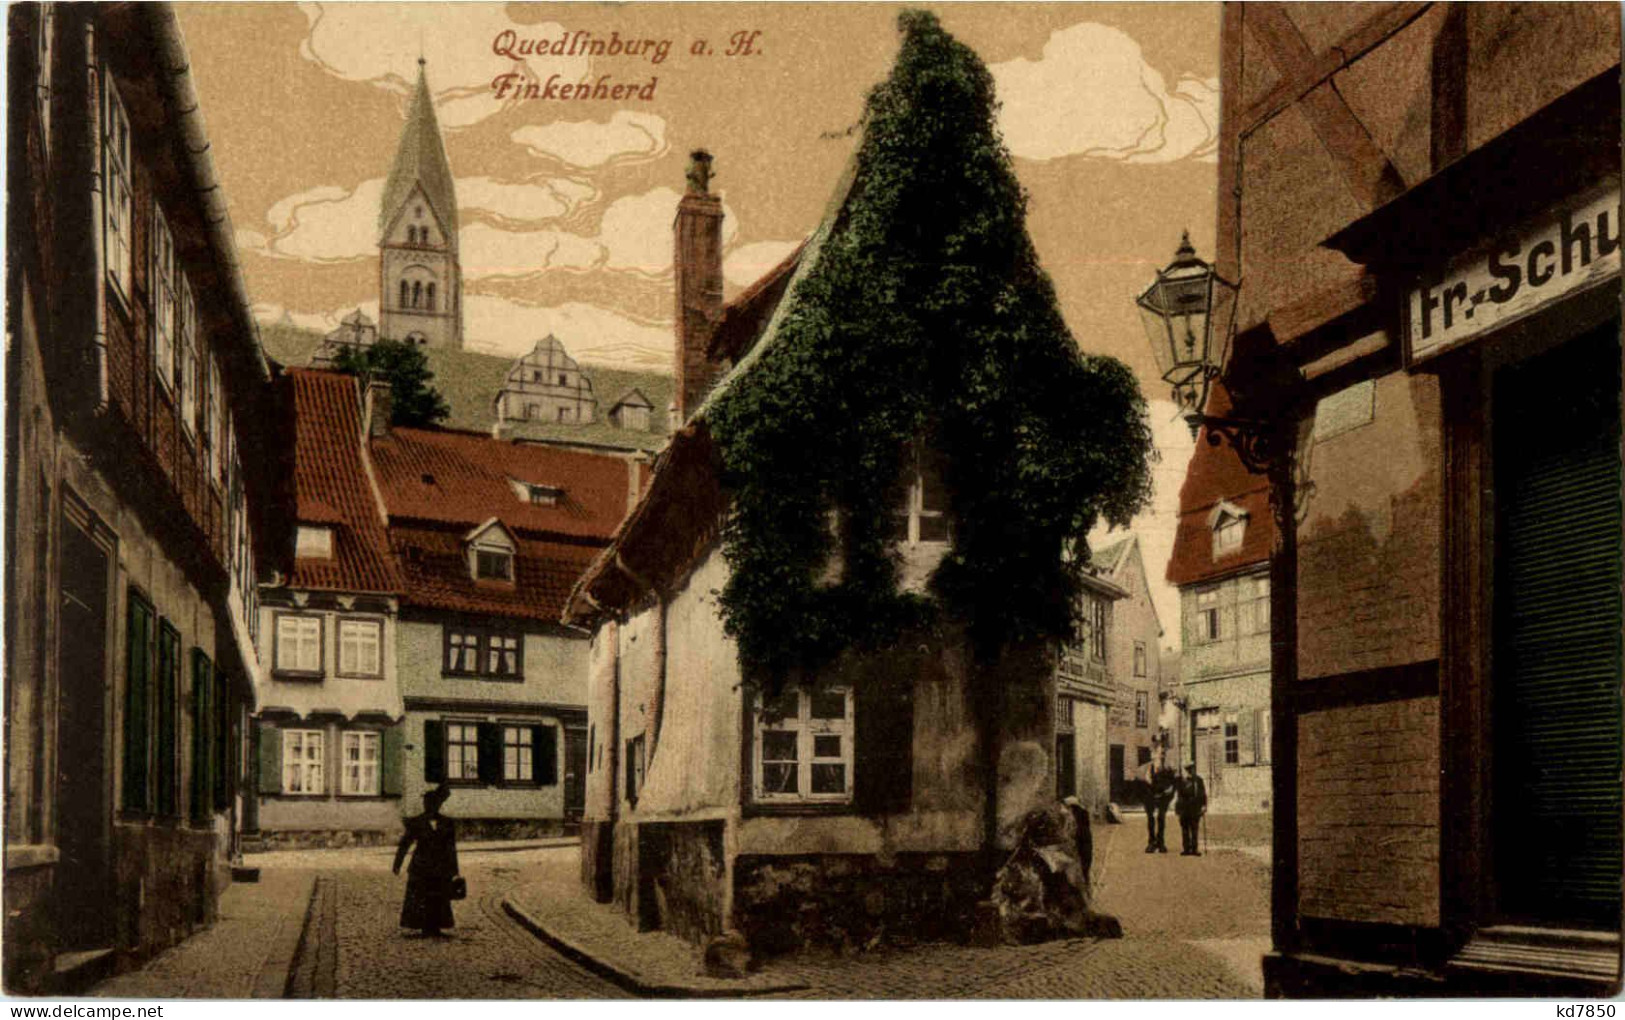 Quedlinburg - Finkenherd - Quedlinburg